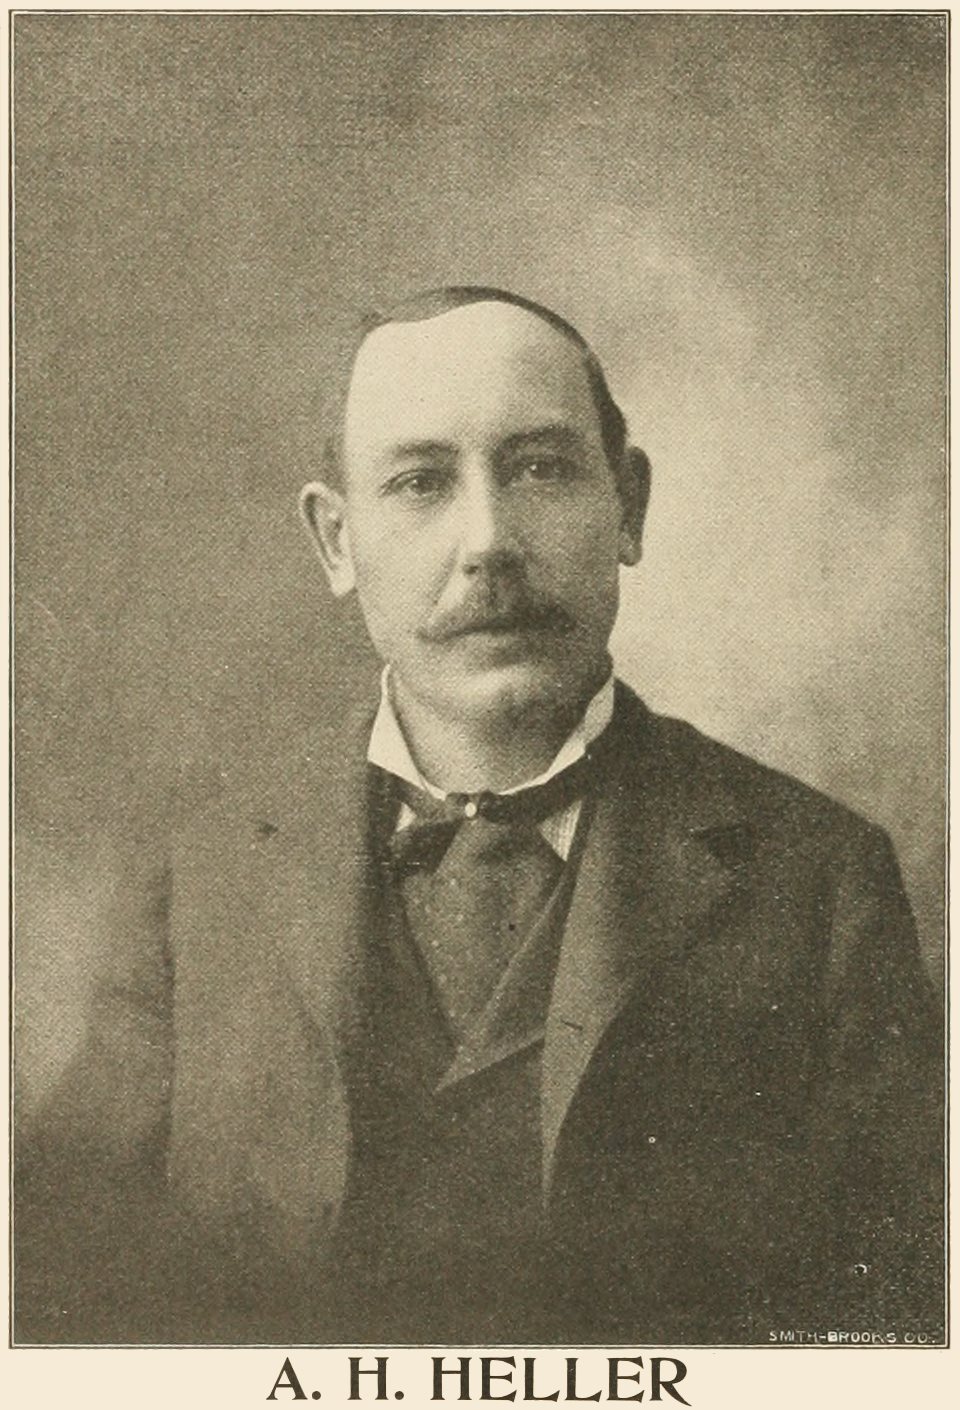 A. H. Heller